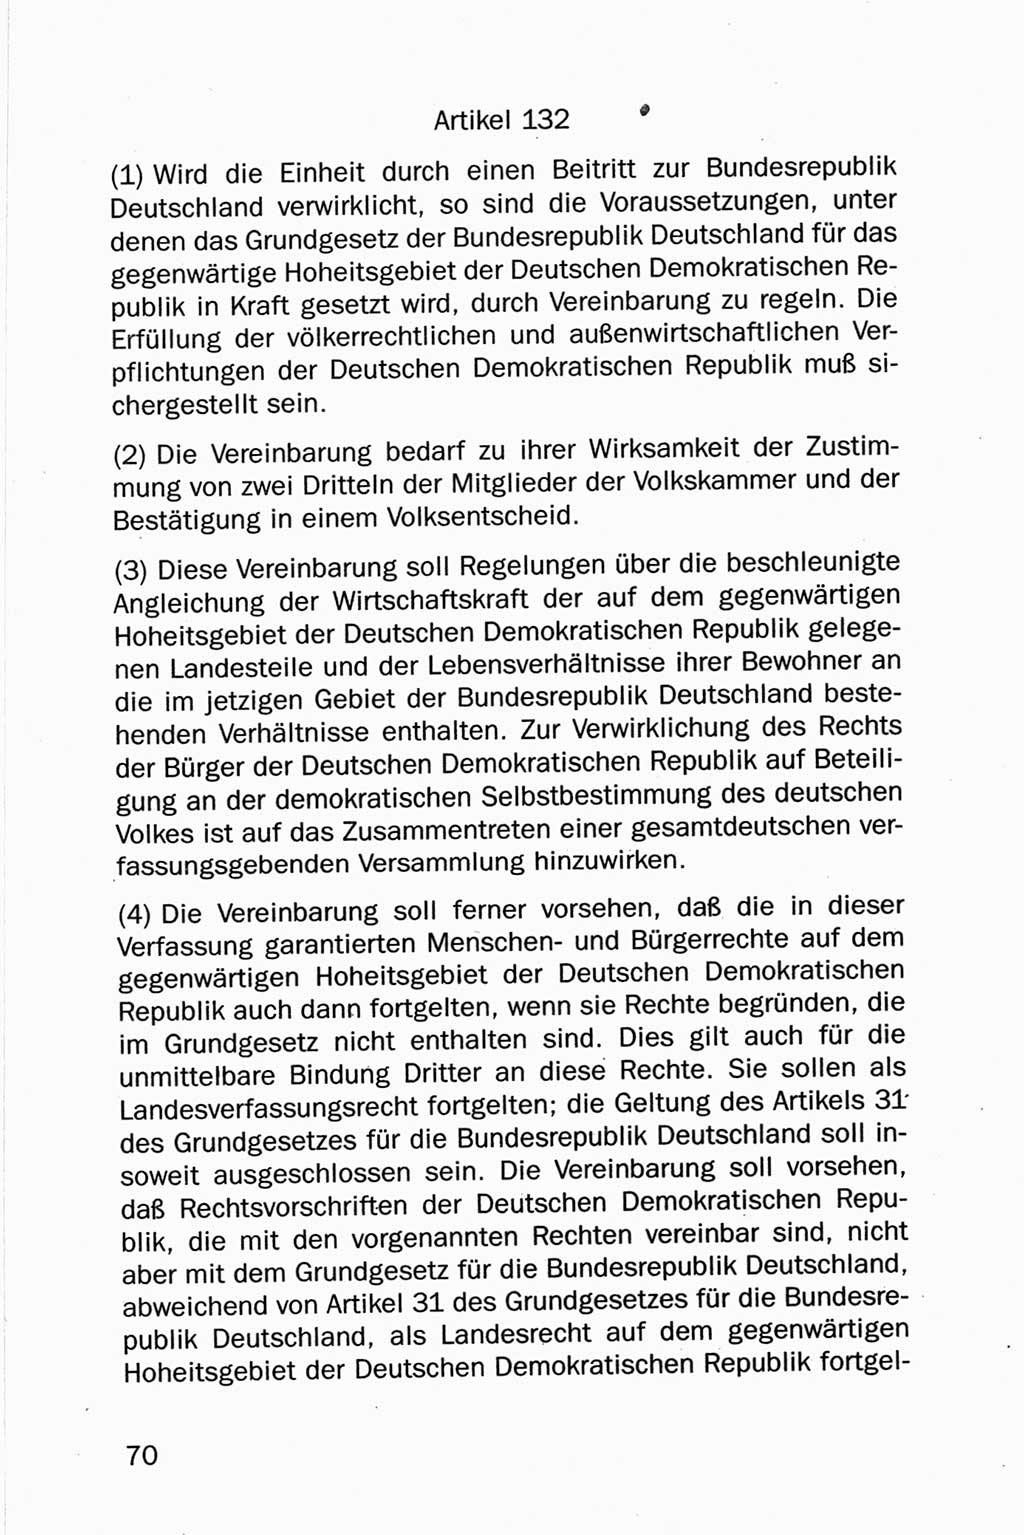 Entwurf Verfassung der Deutschen Demokratischen Republik (DDR), Arbeitsgruppe "Neue Verfassung der DDR" des Runden Tisches, Berlin 1990, Seite 70 (Entw. Verf. DDR 1990, S. 70)